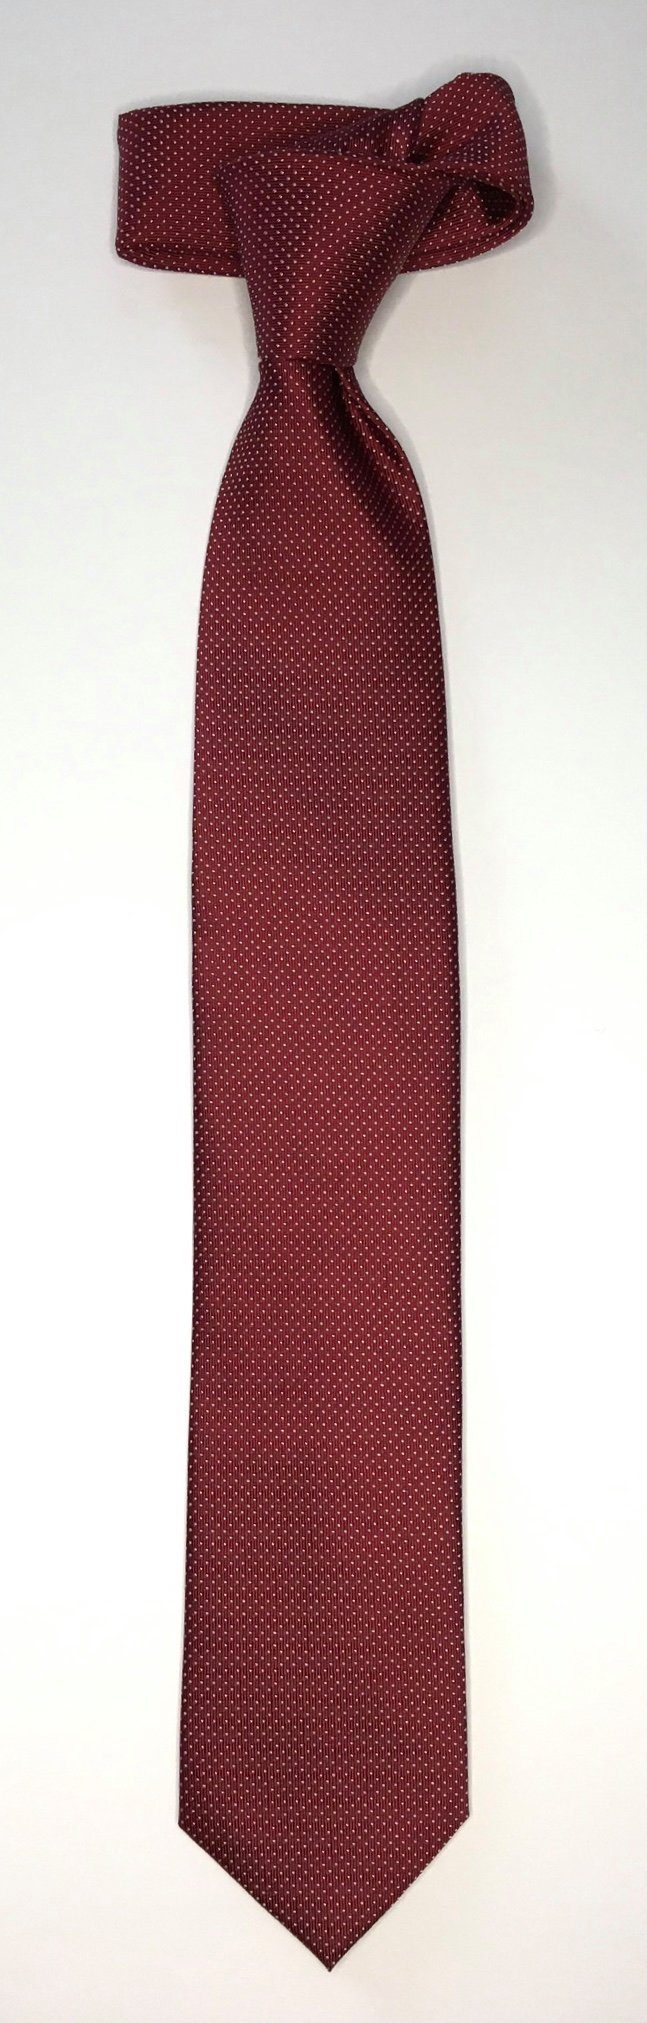 Picoté Krawatte 6cm edlen Krawatte Design Krawatte im Seidenfalter Bordeaux Seidenfalter Picoté Seidenfalter